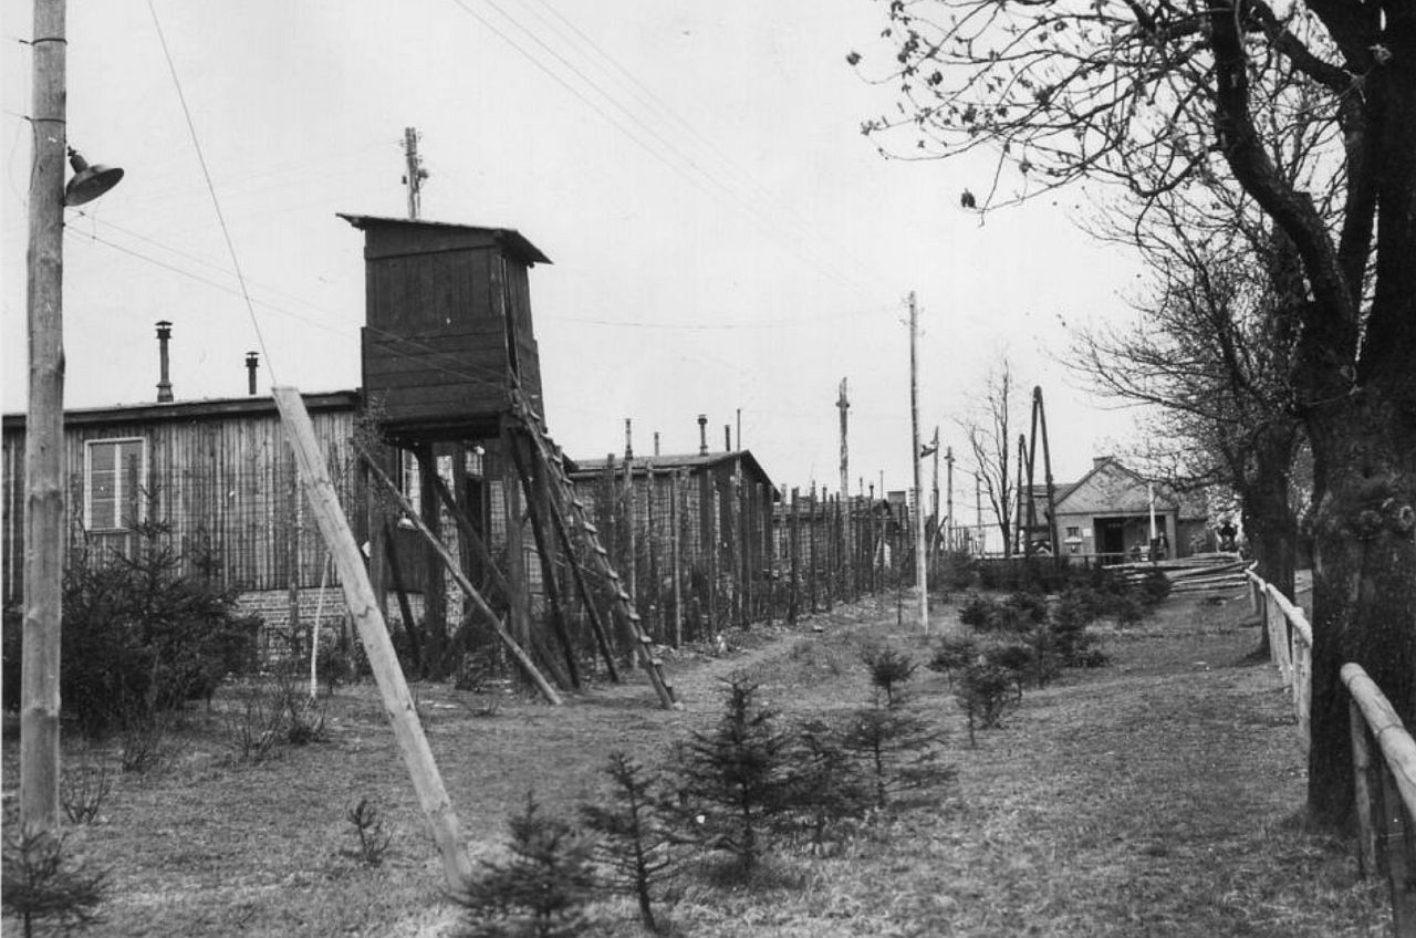 Blick auf einen Wachturm und den Lagerzaun des Buchenwalder Außenlagers Ohrdruf. Der Wachturm wirkt provisorisch und erinnert an einen Jägerstand.